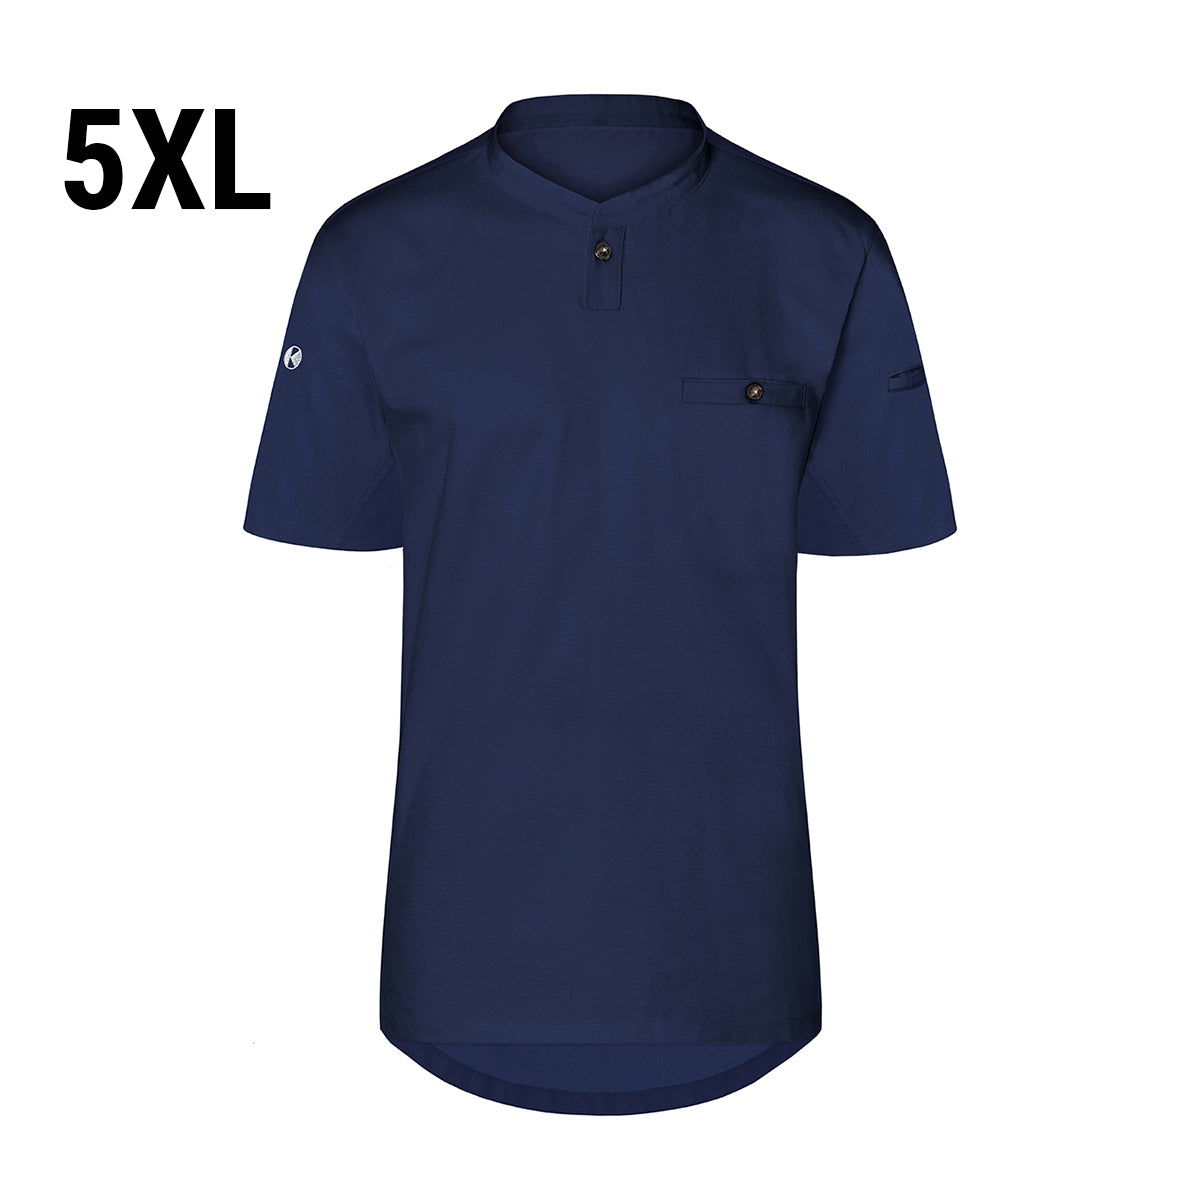 (6 stk) Karlowsky - Kortærmet arbejdsskjorte til herrer Performance - Marineblå - Størrelse: 5XL